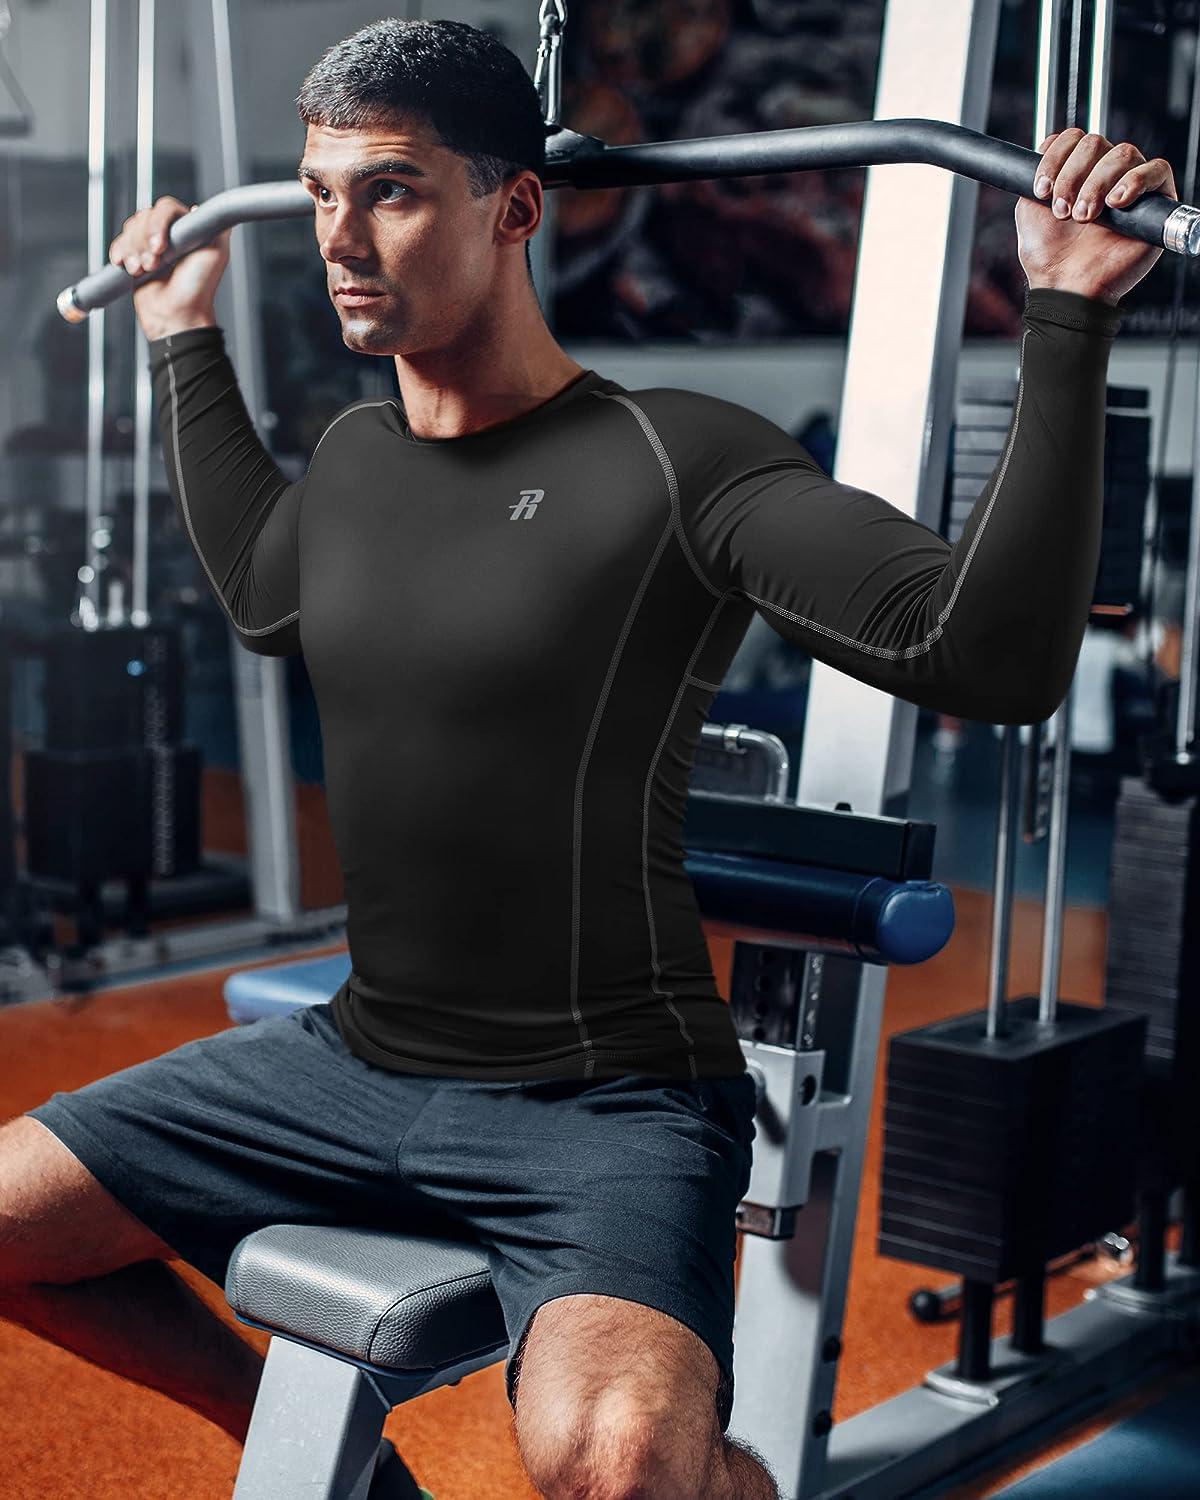 Workout Men Quick Dry, Gym Accessories Men, Compression T-shirt